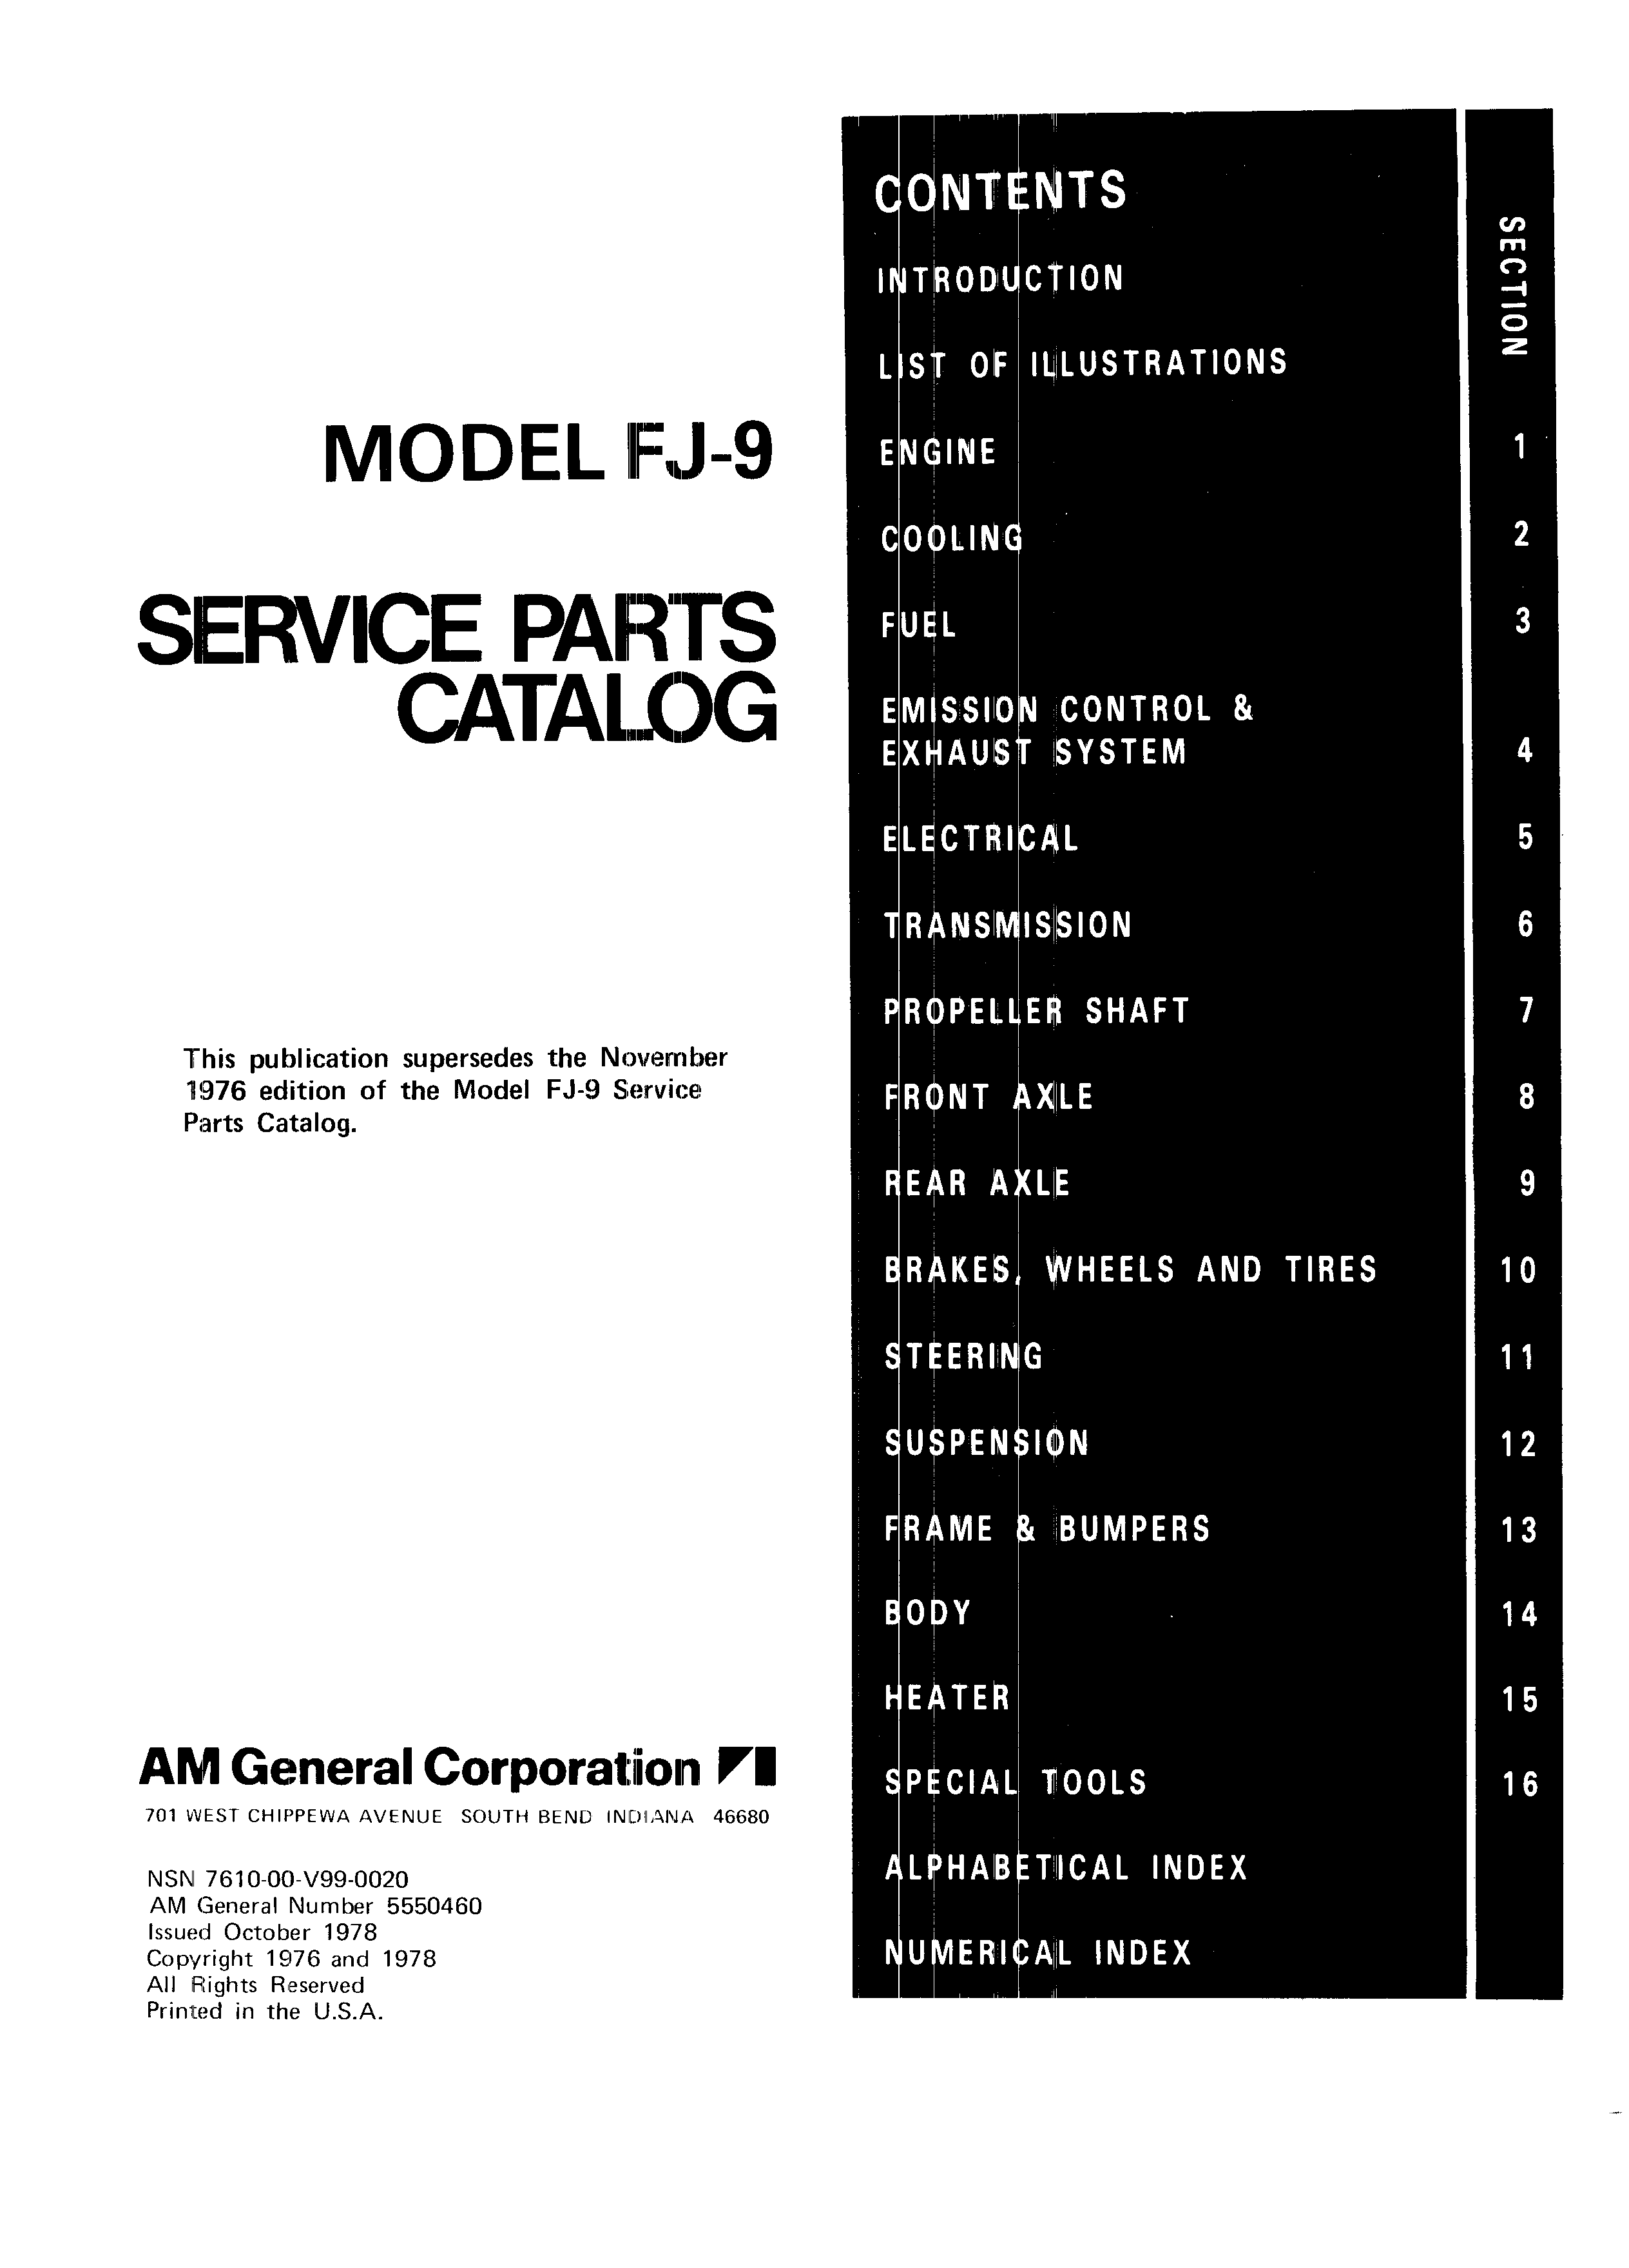 Model FJ-9 Service Parts Catalog October 1978